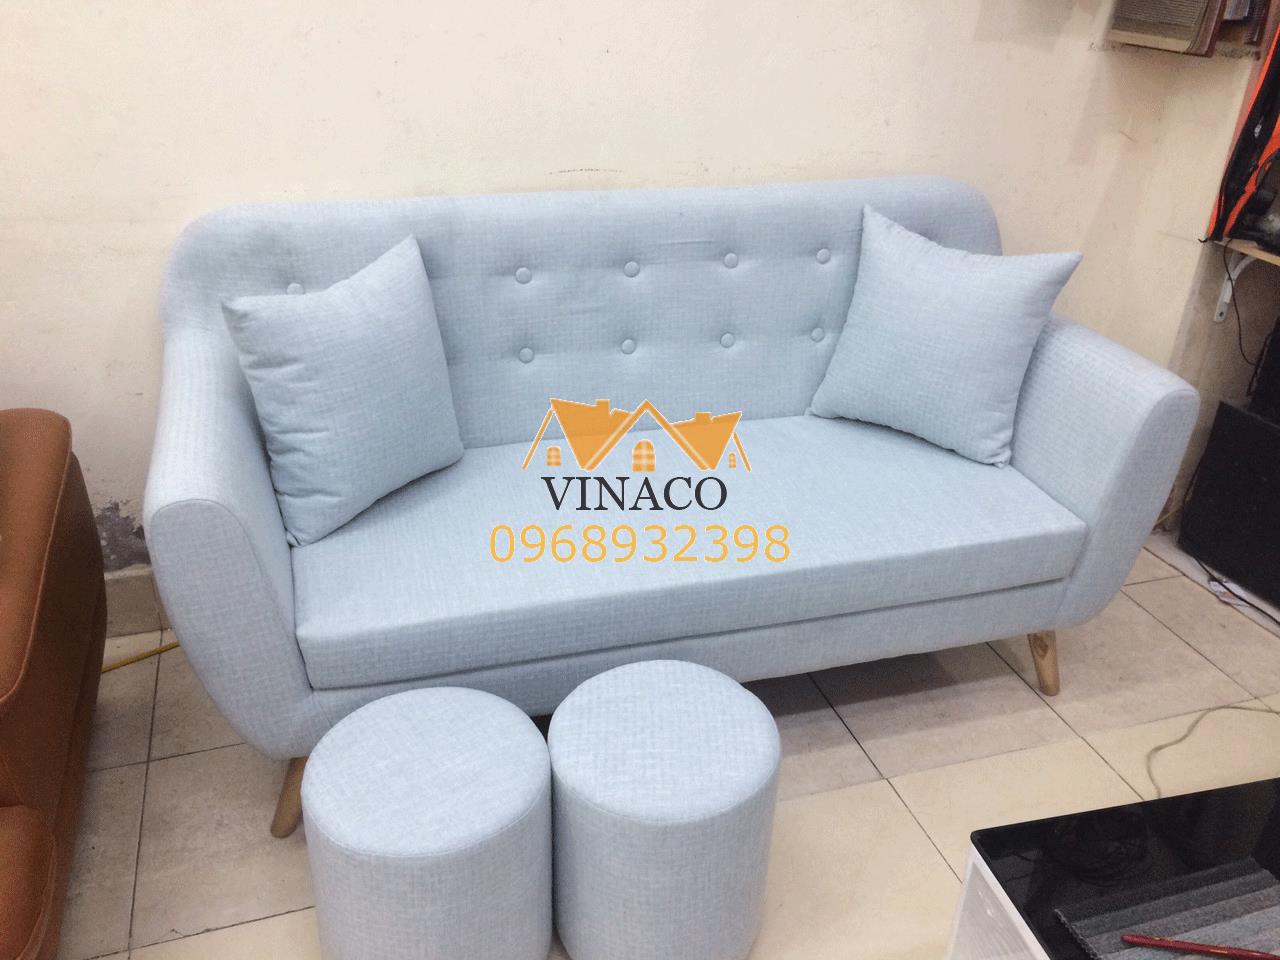 Bí kíp lựa chọn chất liệu và màu sắc bọc ghế sofa phù hợp cho mùa Xuân